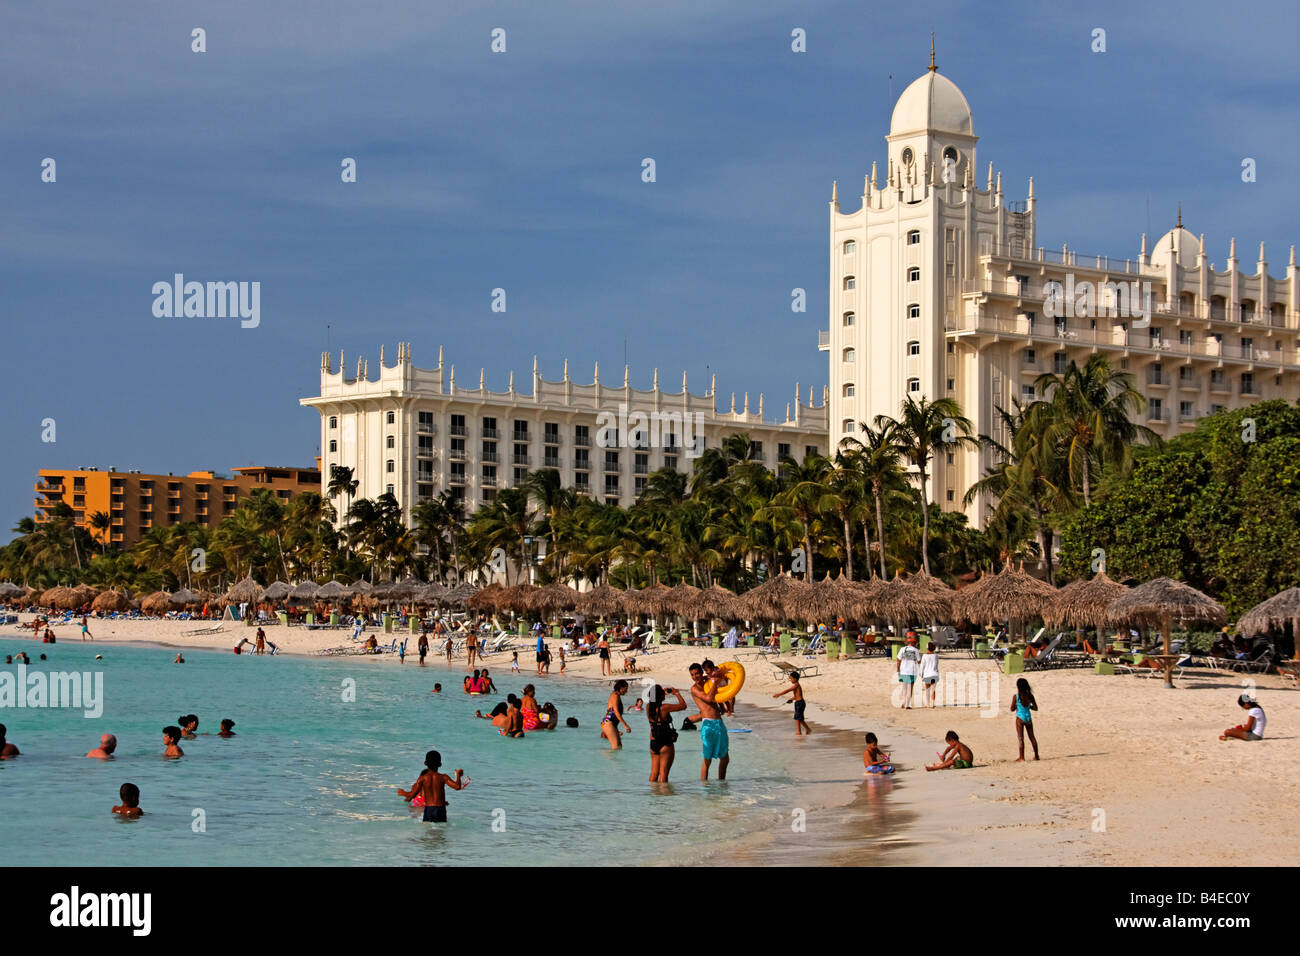 Palm Beach Aruba Antilles néerlandaises Antilles Amérique centrale de la population locale à la plage le dimanche Riu Hotel Casino Banque D'Images